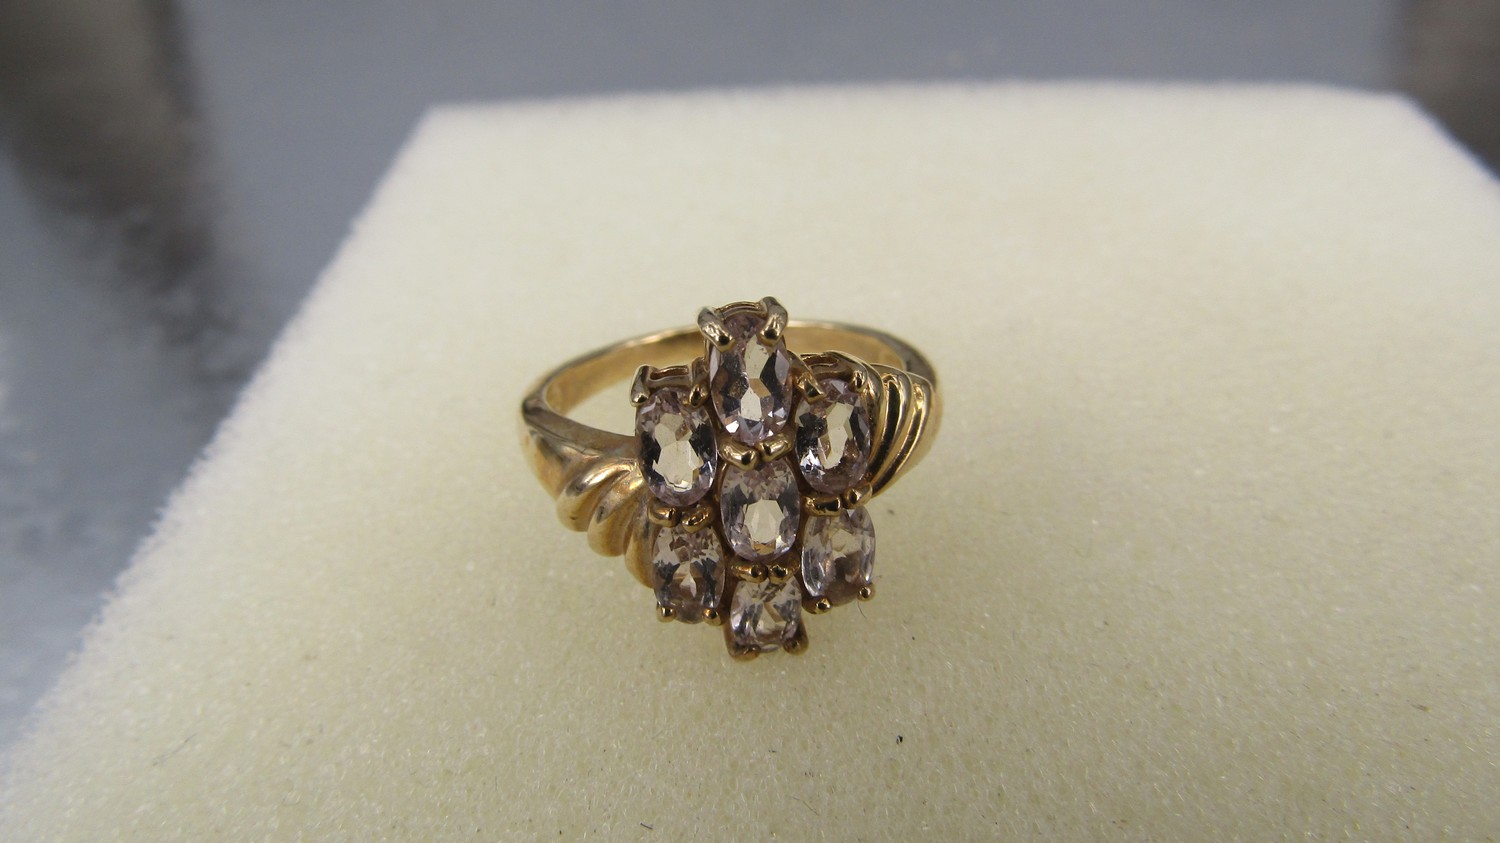 Semi precious 9ct gold Morganite ring - Image 2 of 5